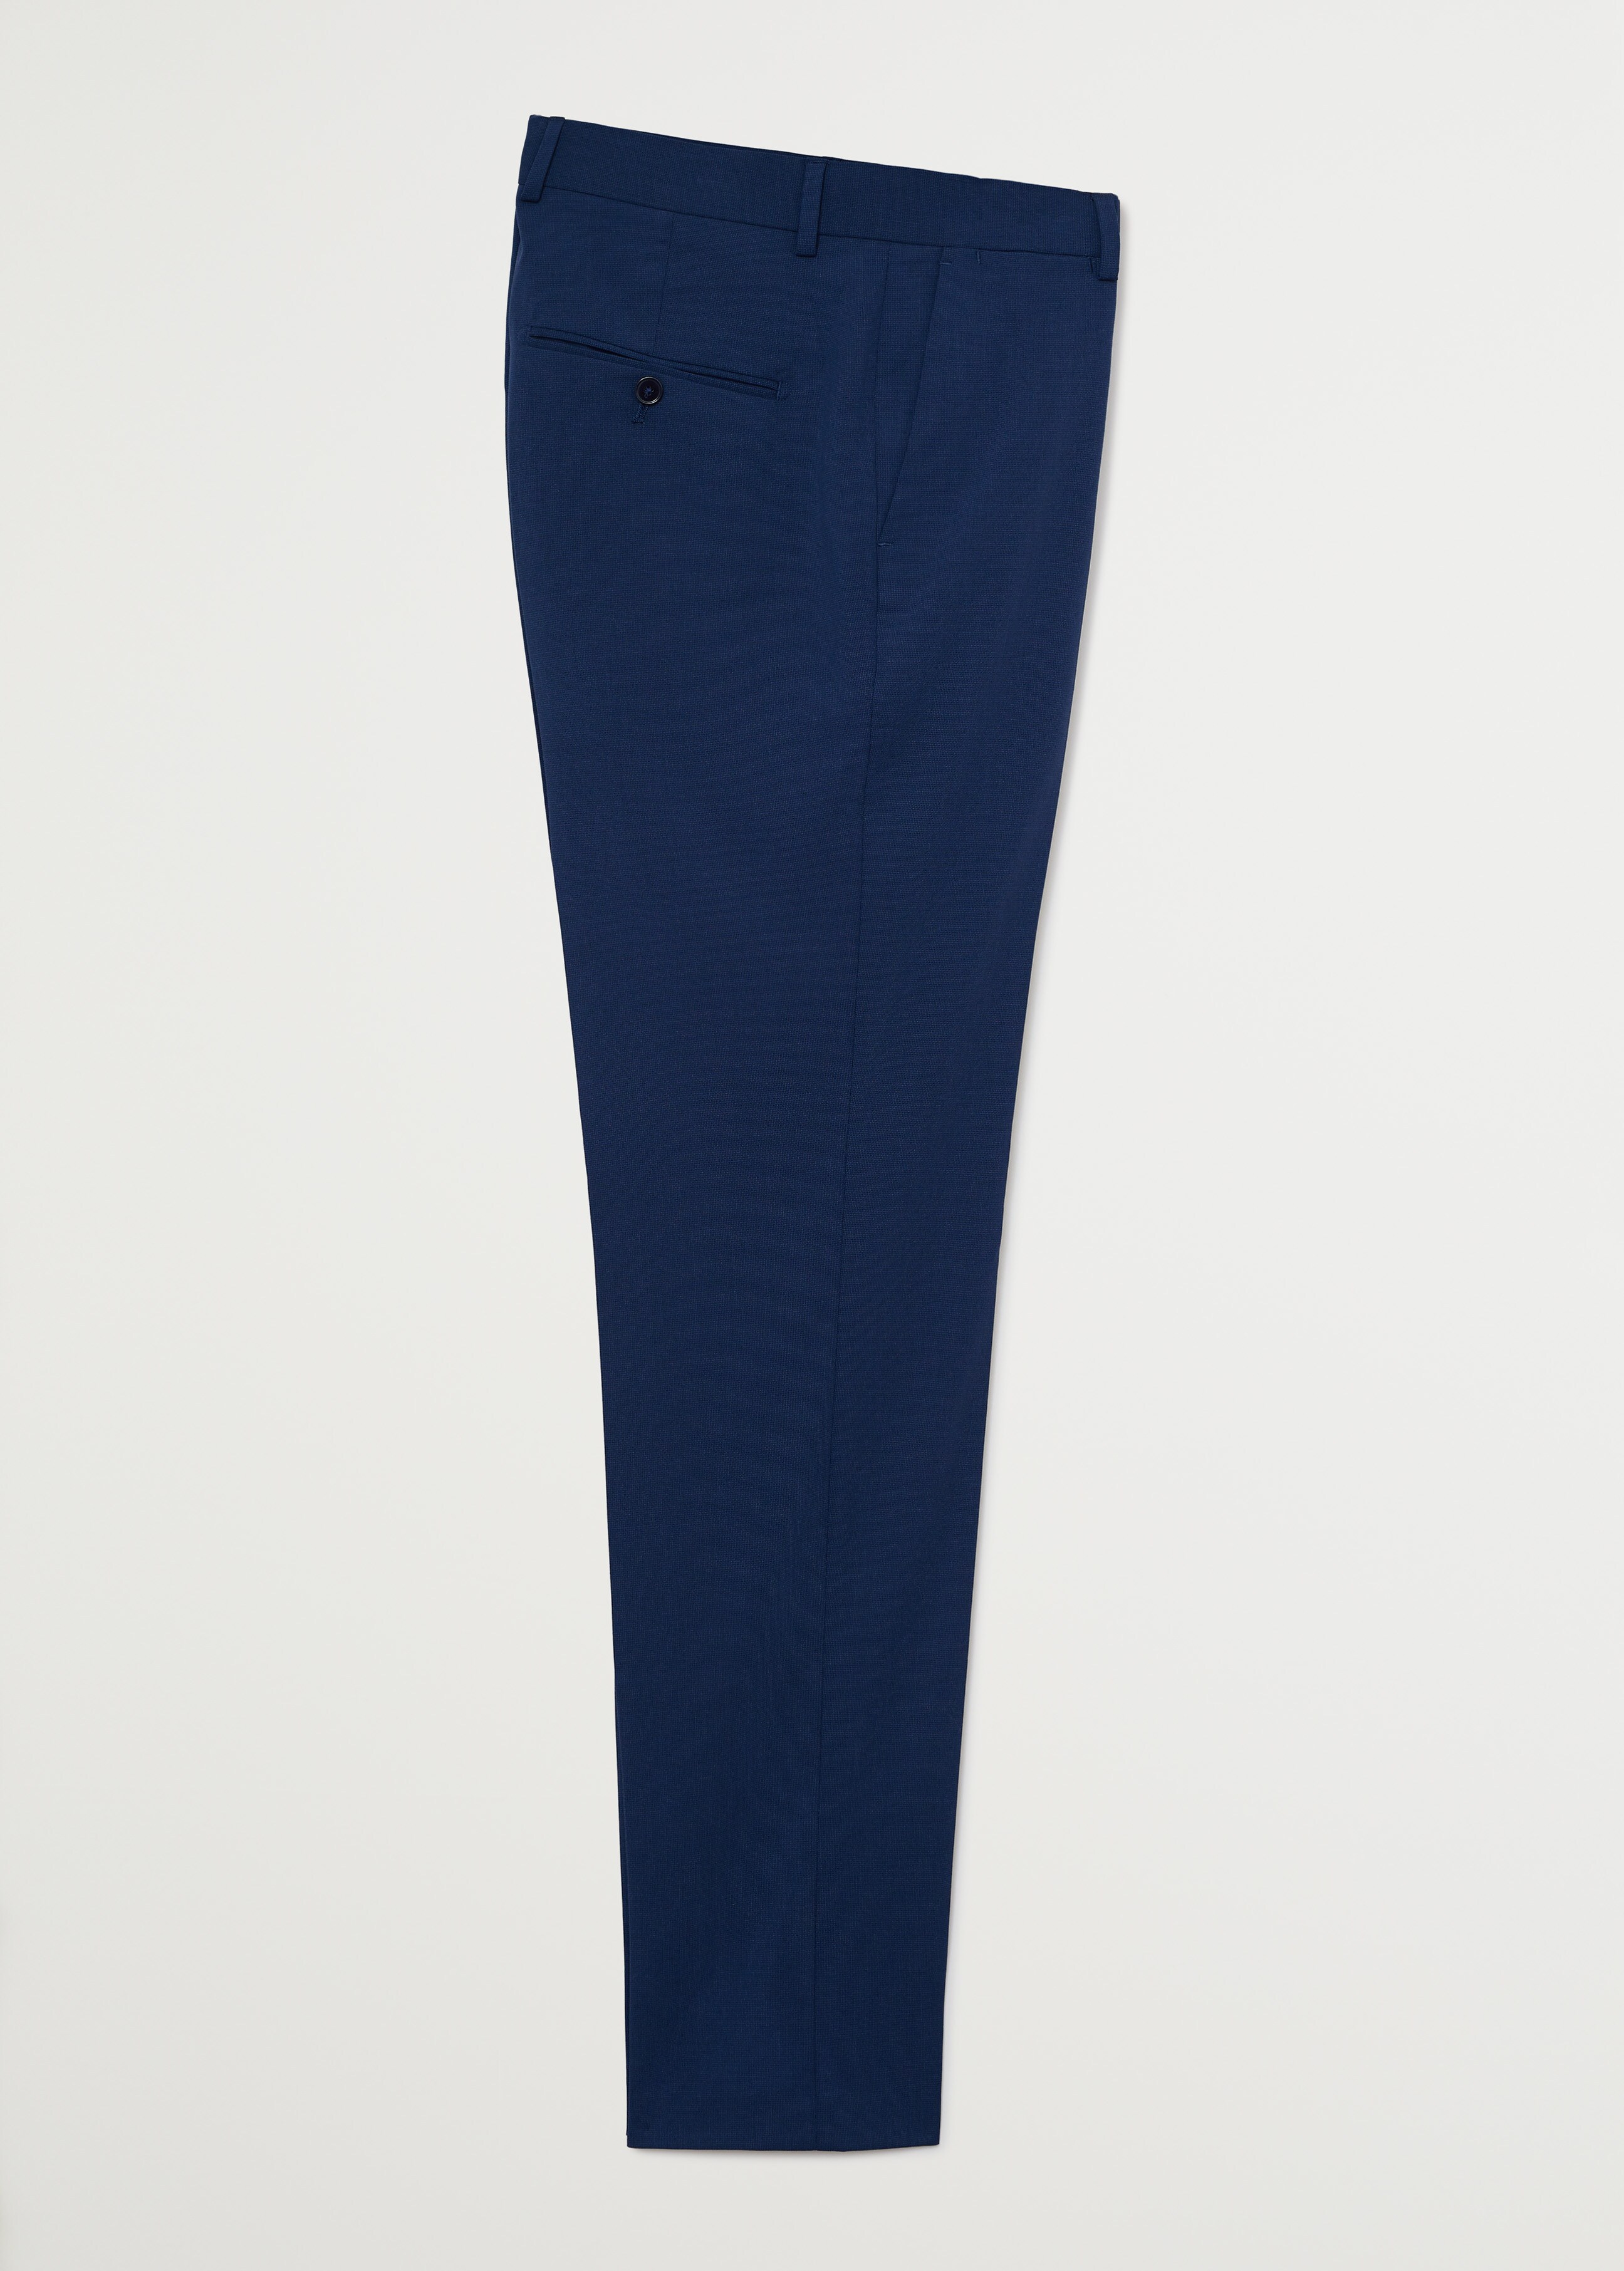 Oblekové kalhoty slim fit s mikro strukturou - Zboží bez modelu